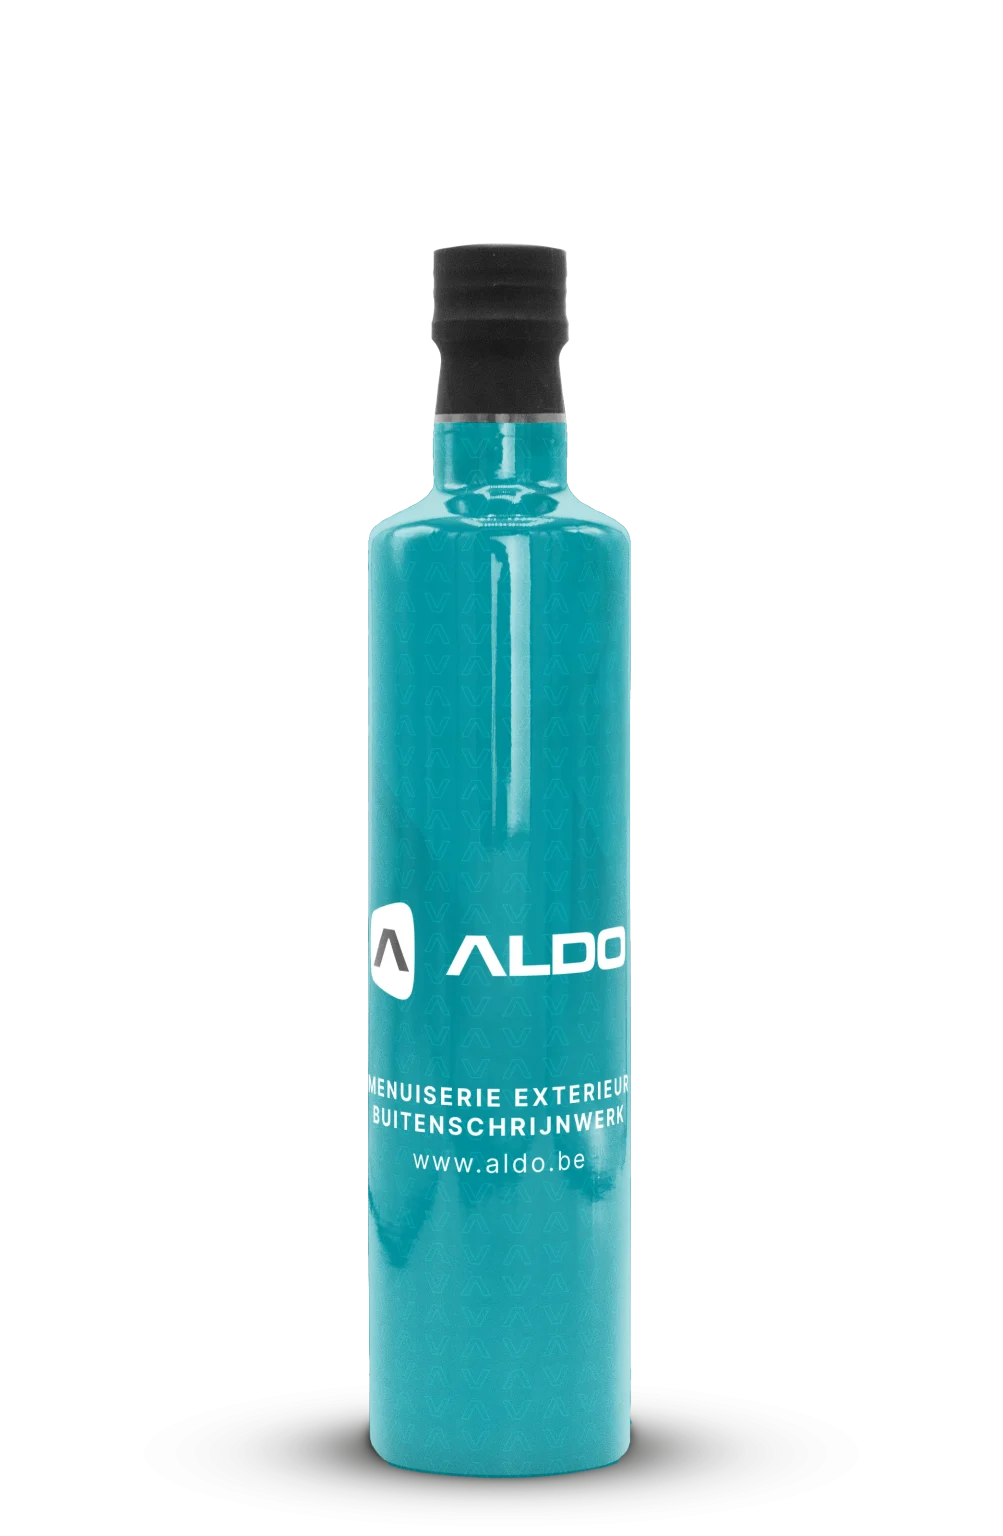 Bedrukte fles olijfolie van Aldo